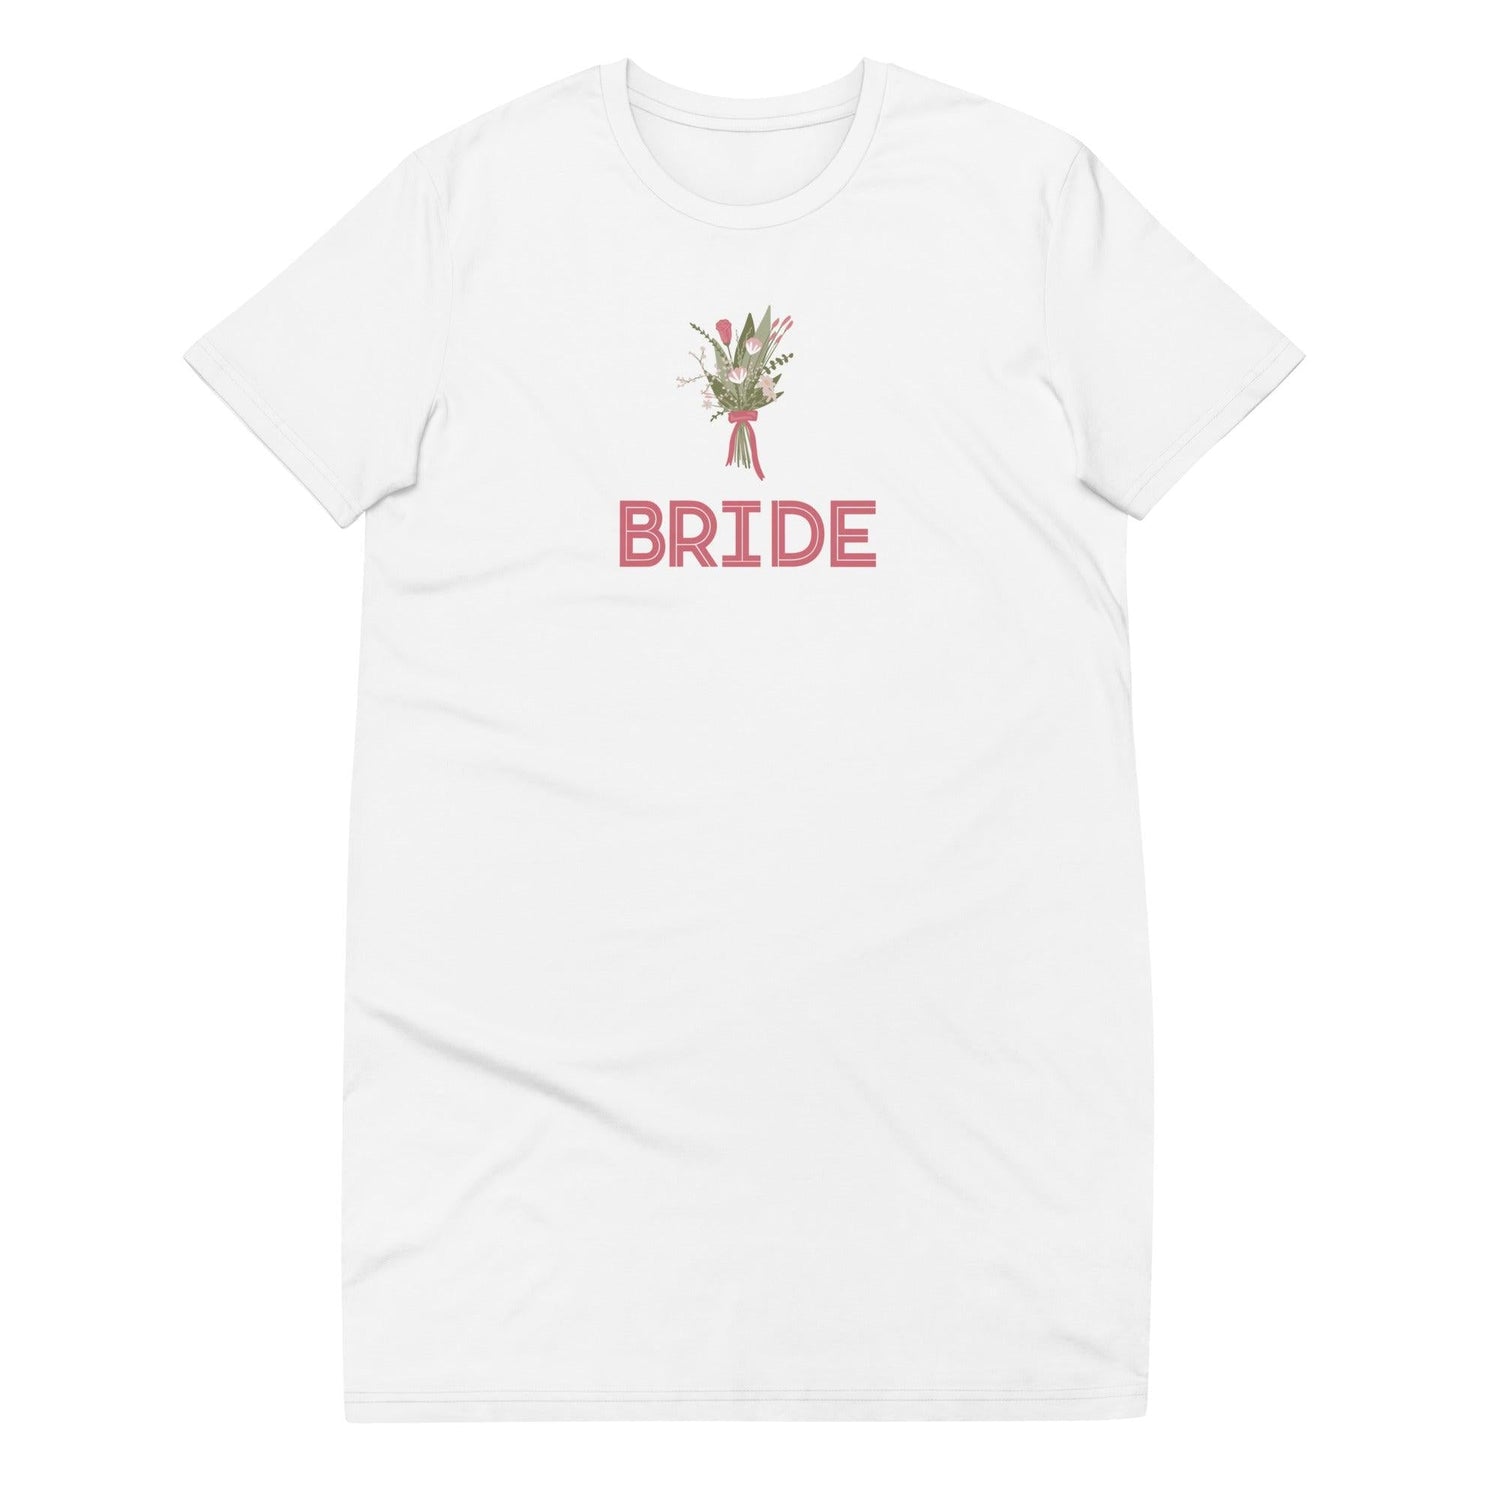 Bride Organic cotton t-shirt dress - Swim Coverup by Oaklynn Lane - White